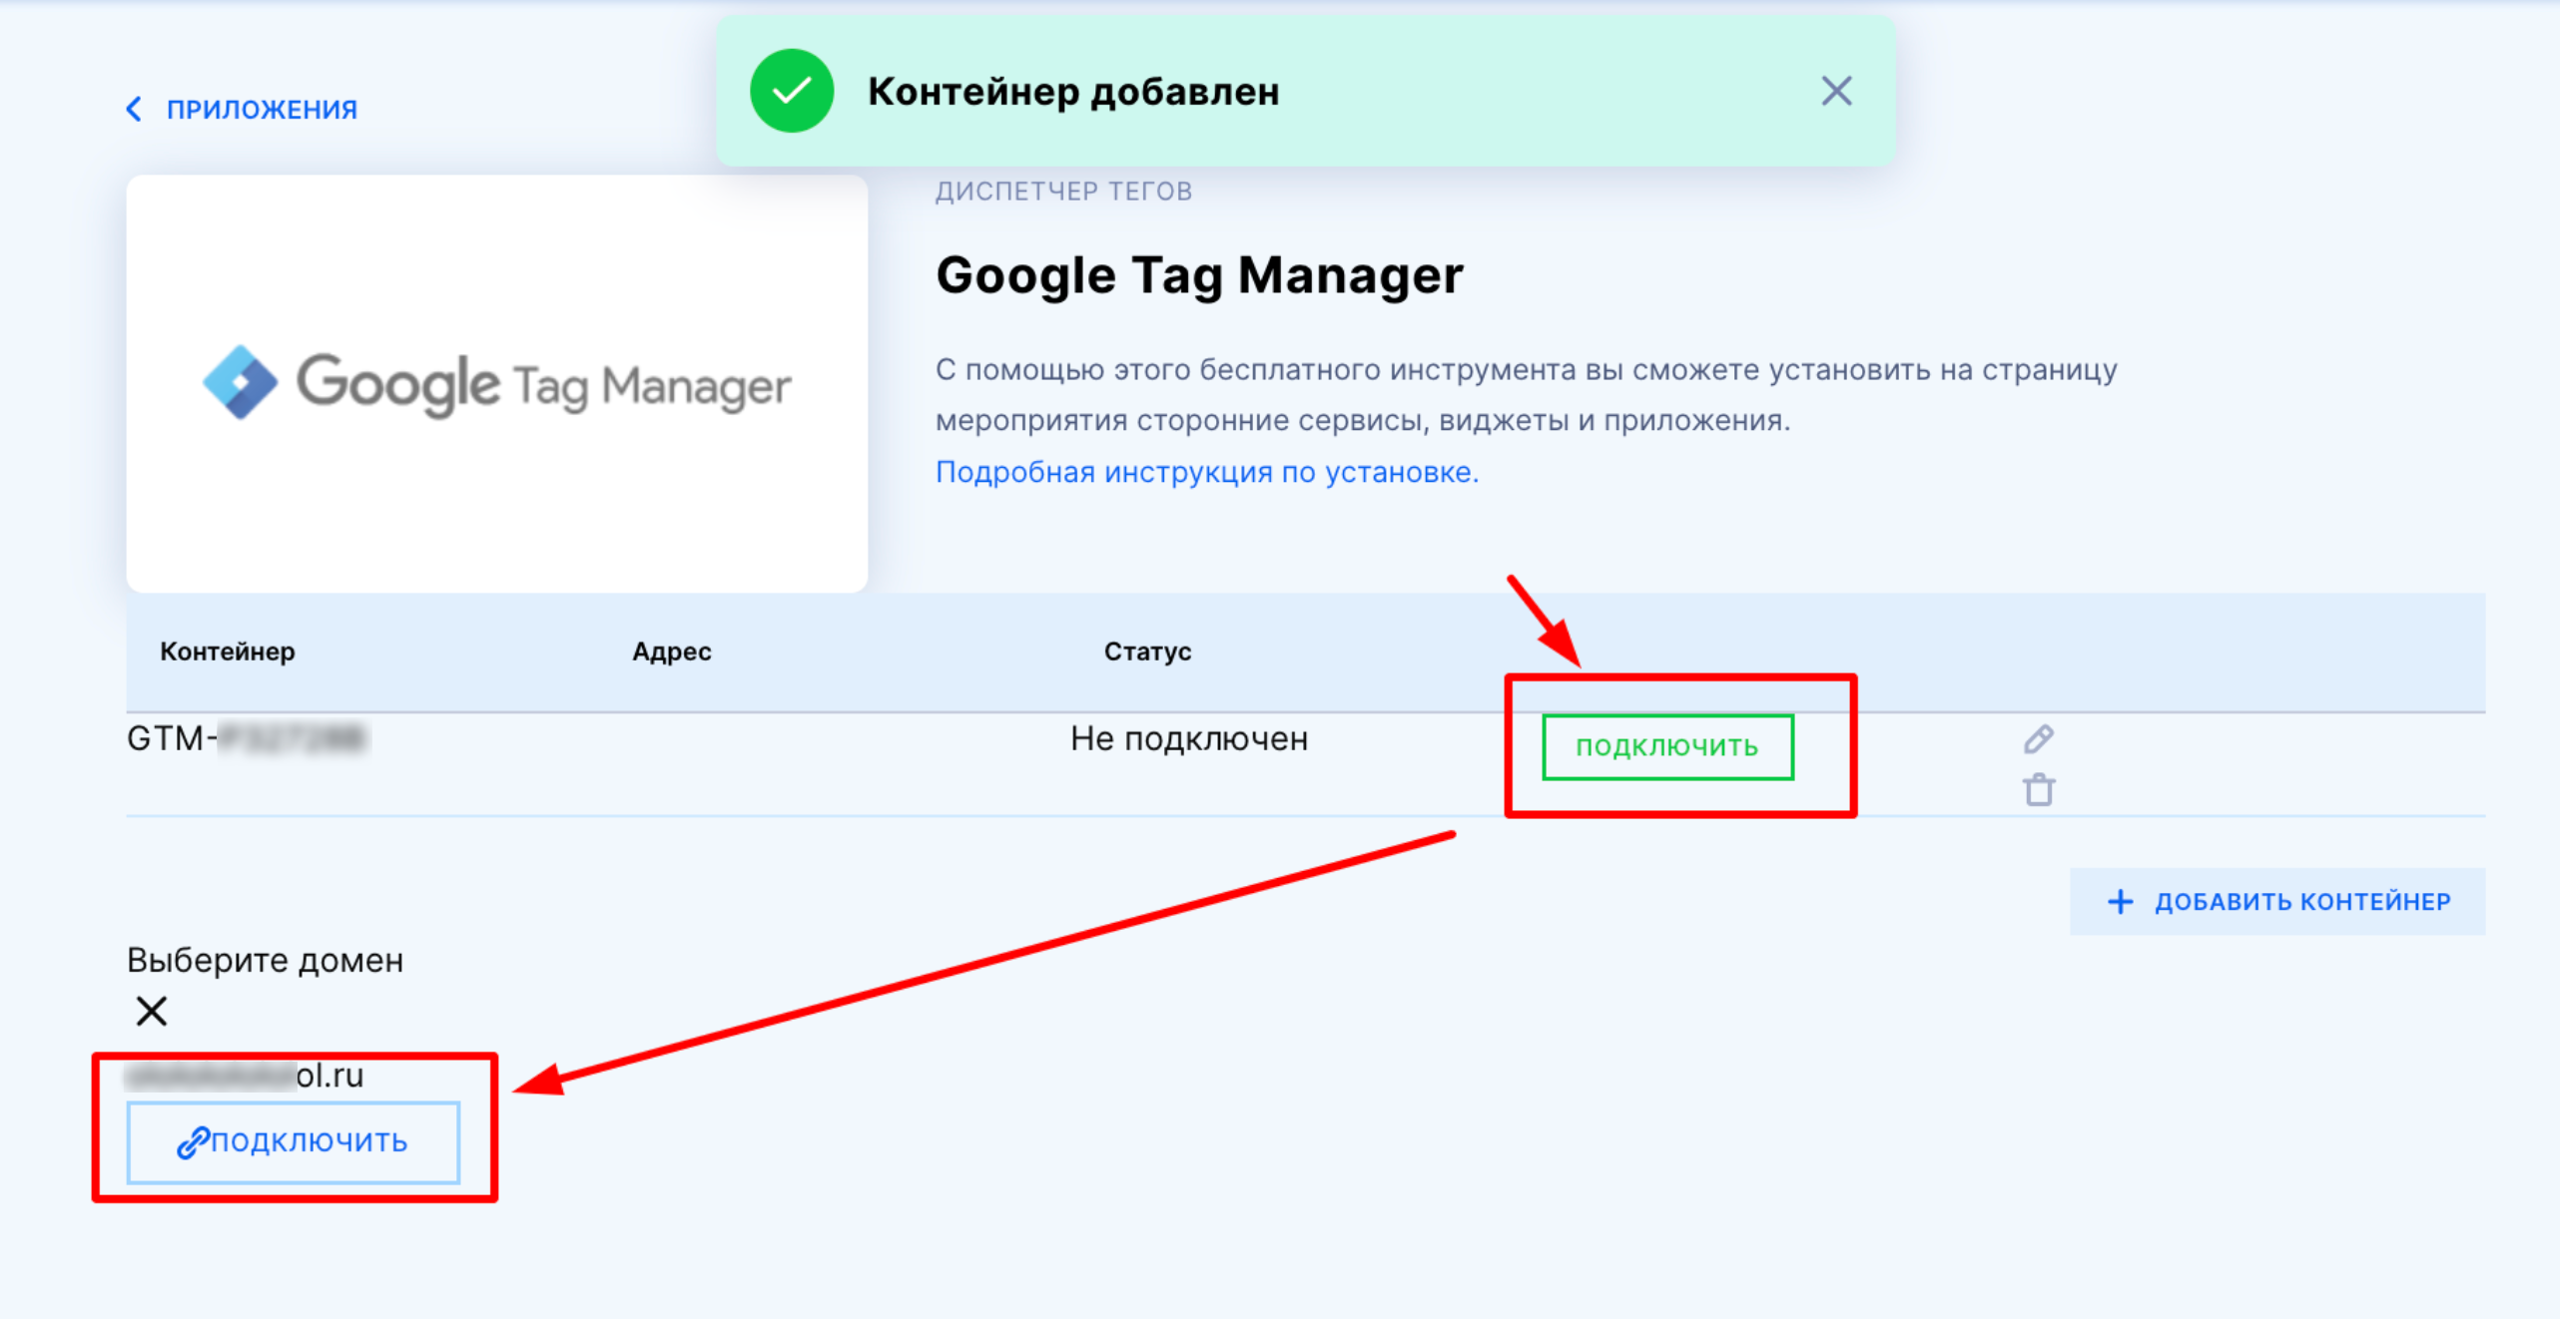 Как подключить к странице события Google Tag Manager?